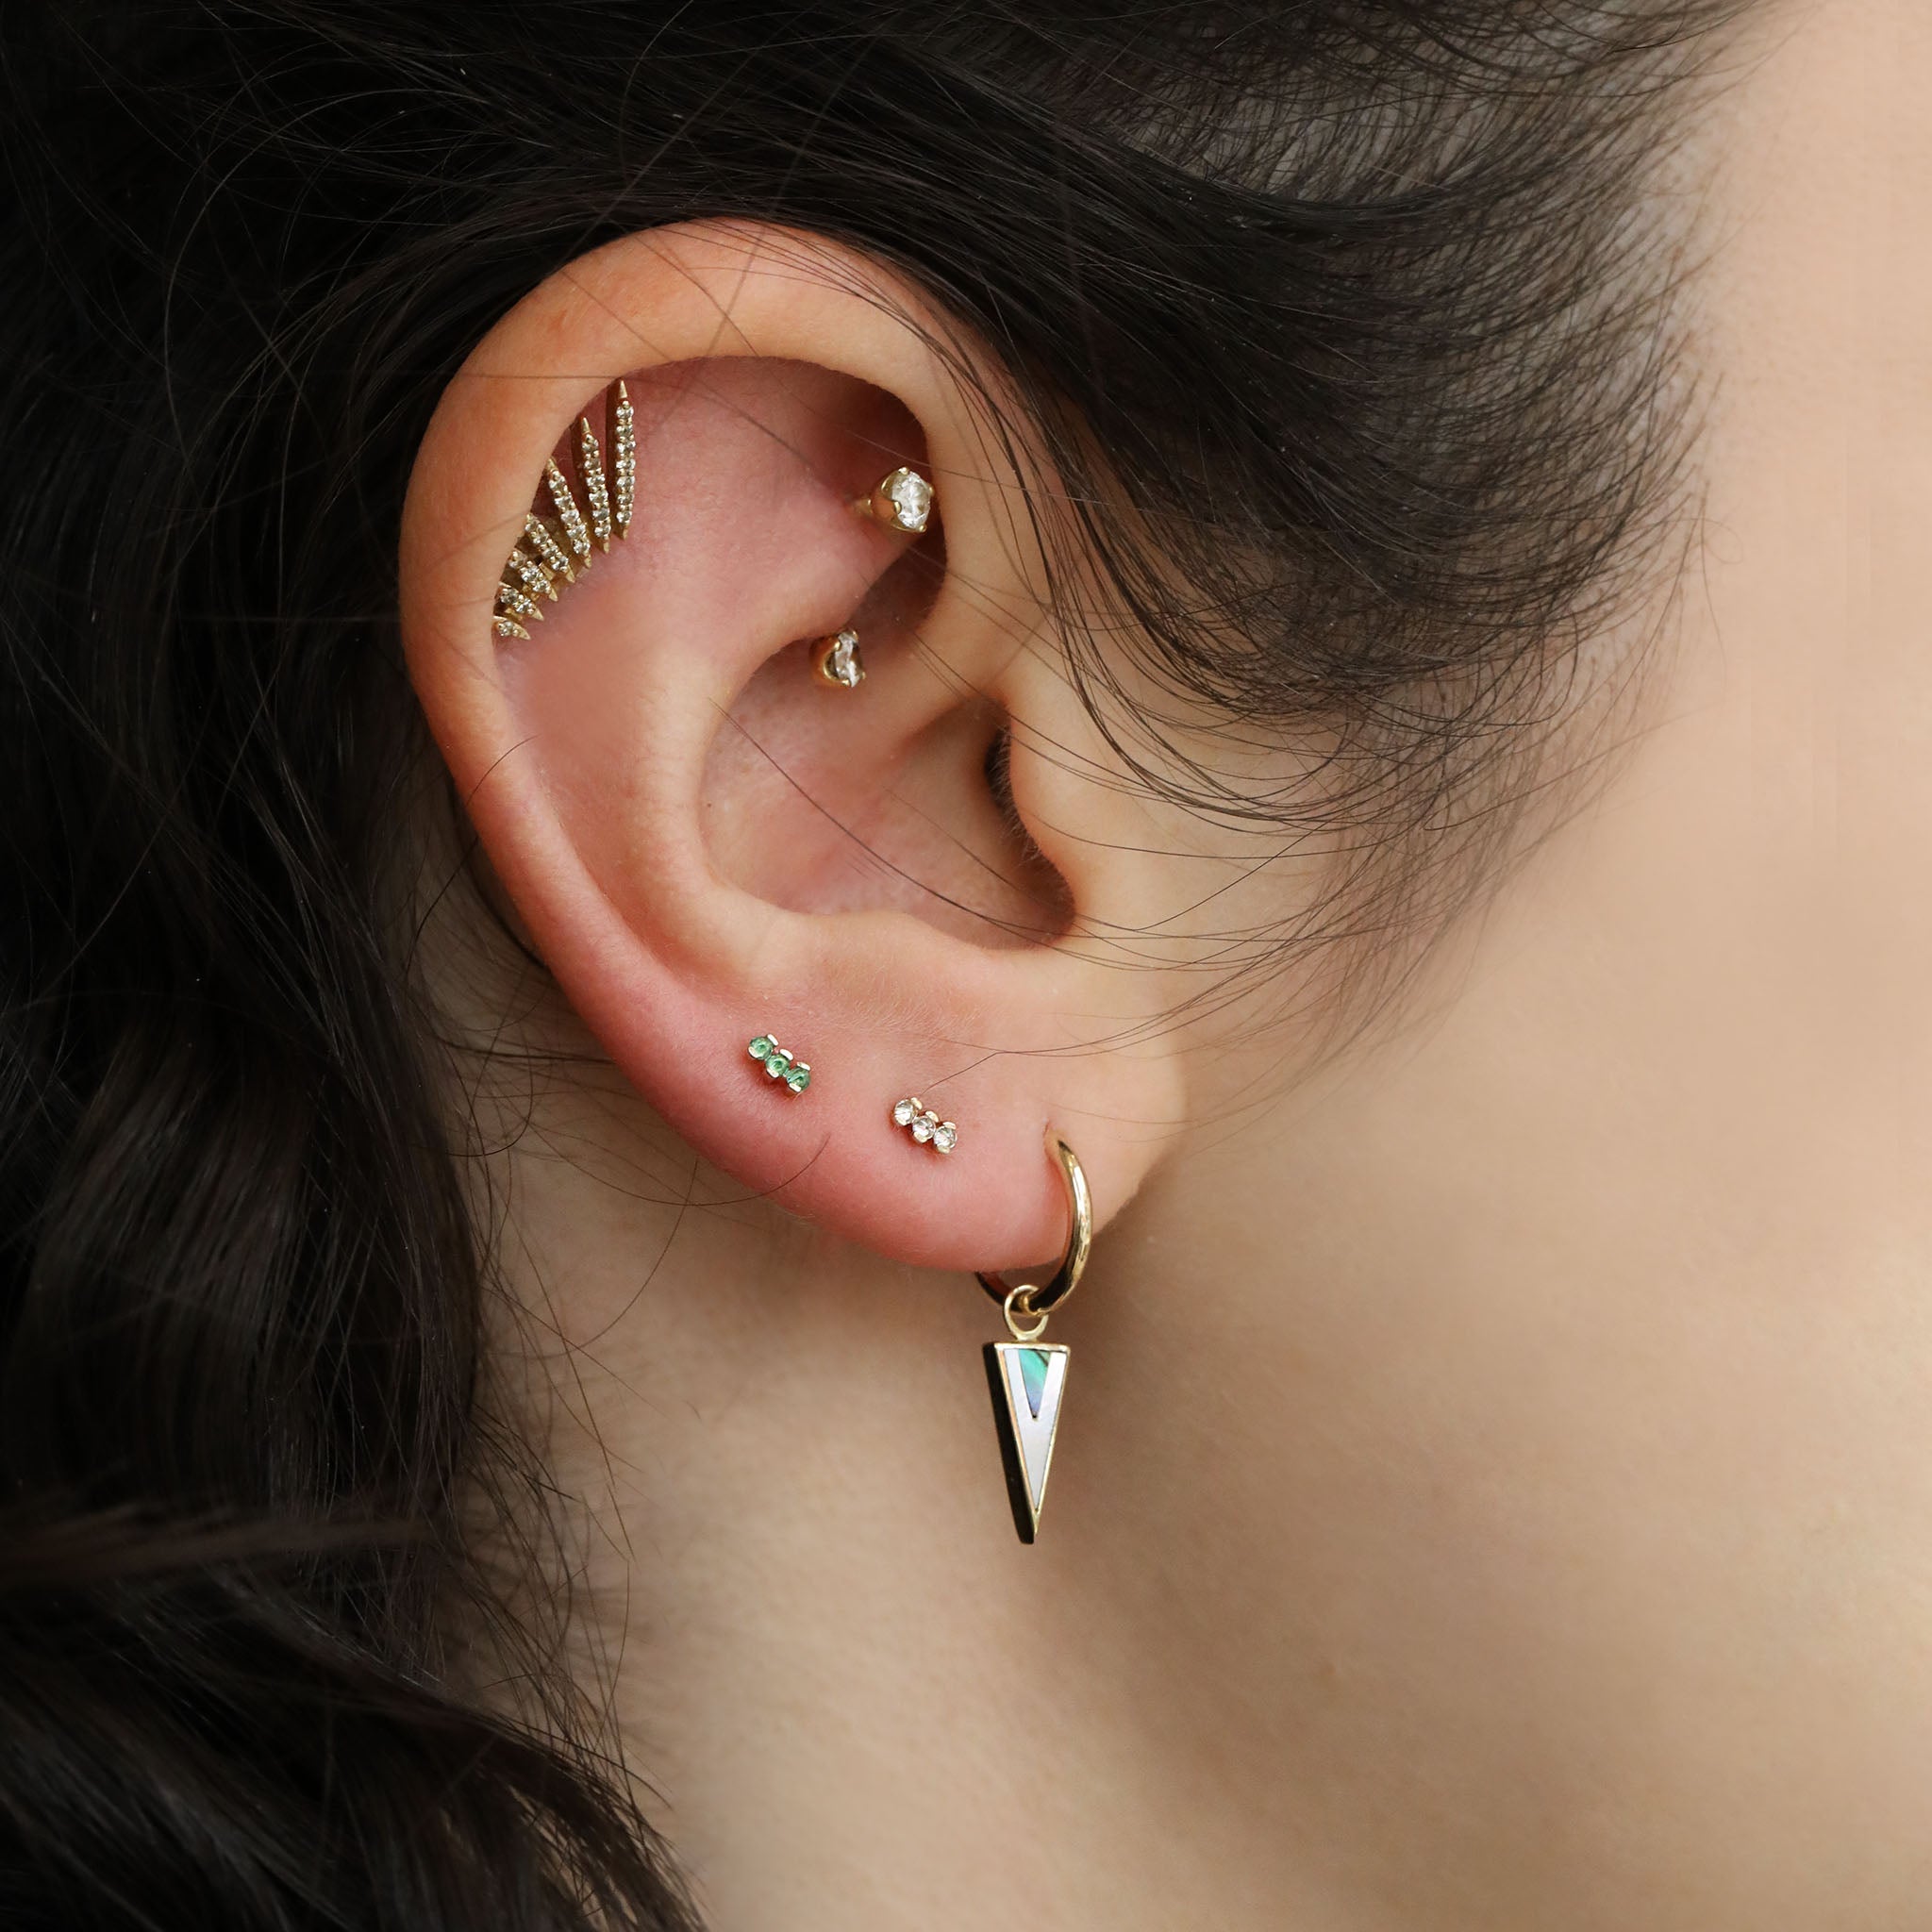 Flying Wing Earring with Diamonds - Peridot Fine Jewelry - Celine Daoust